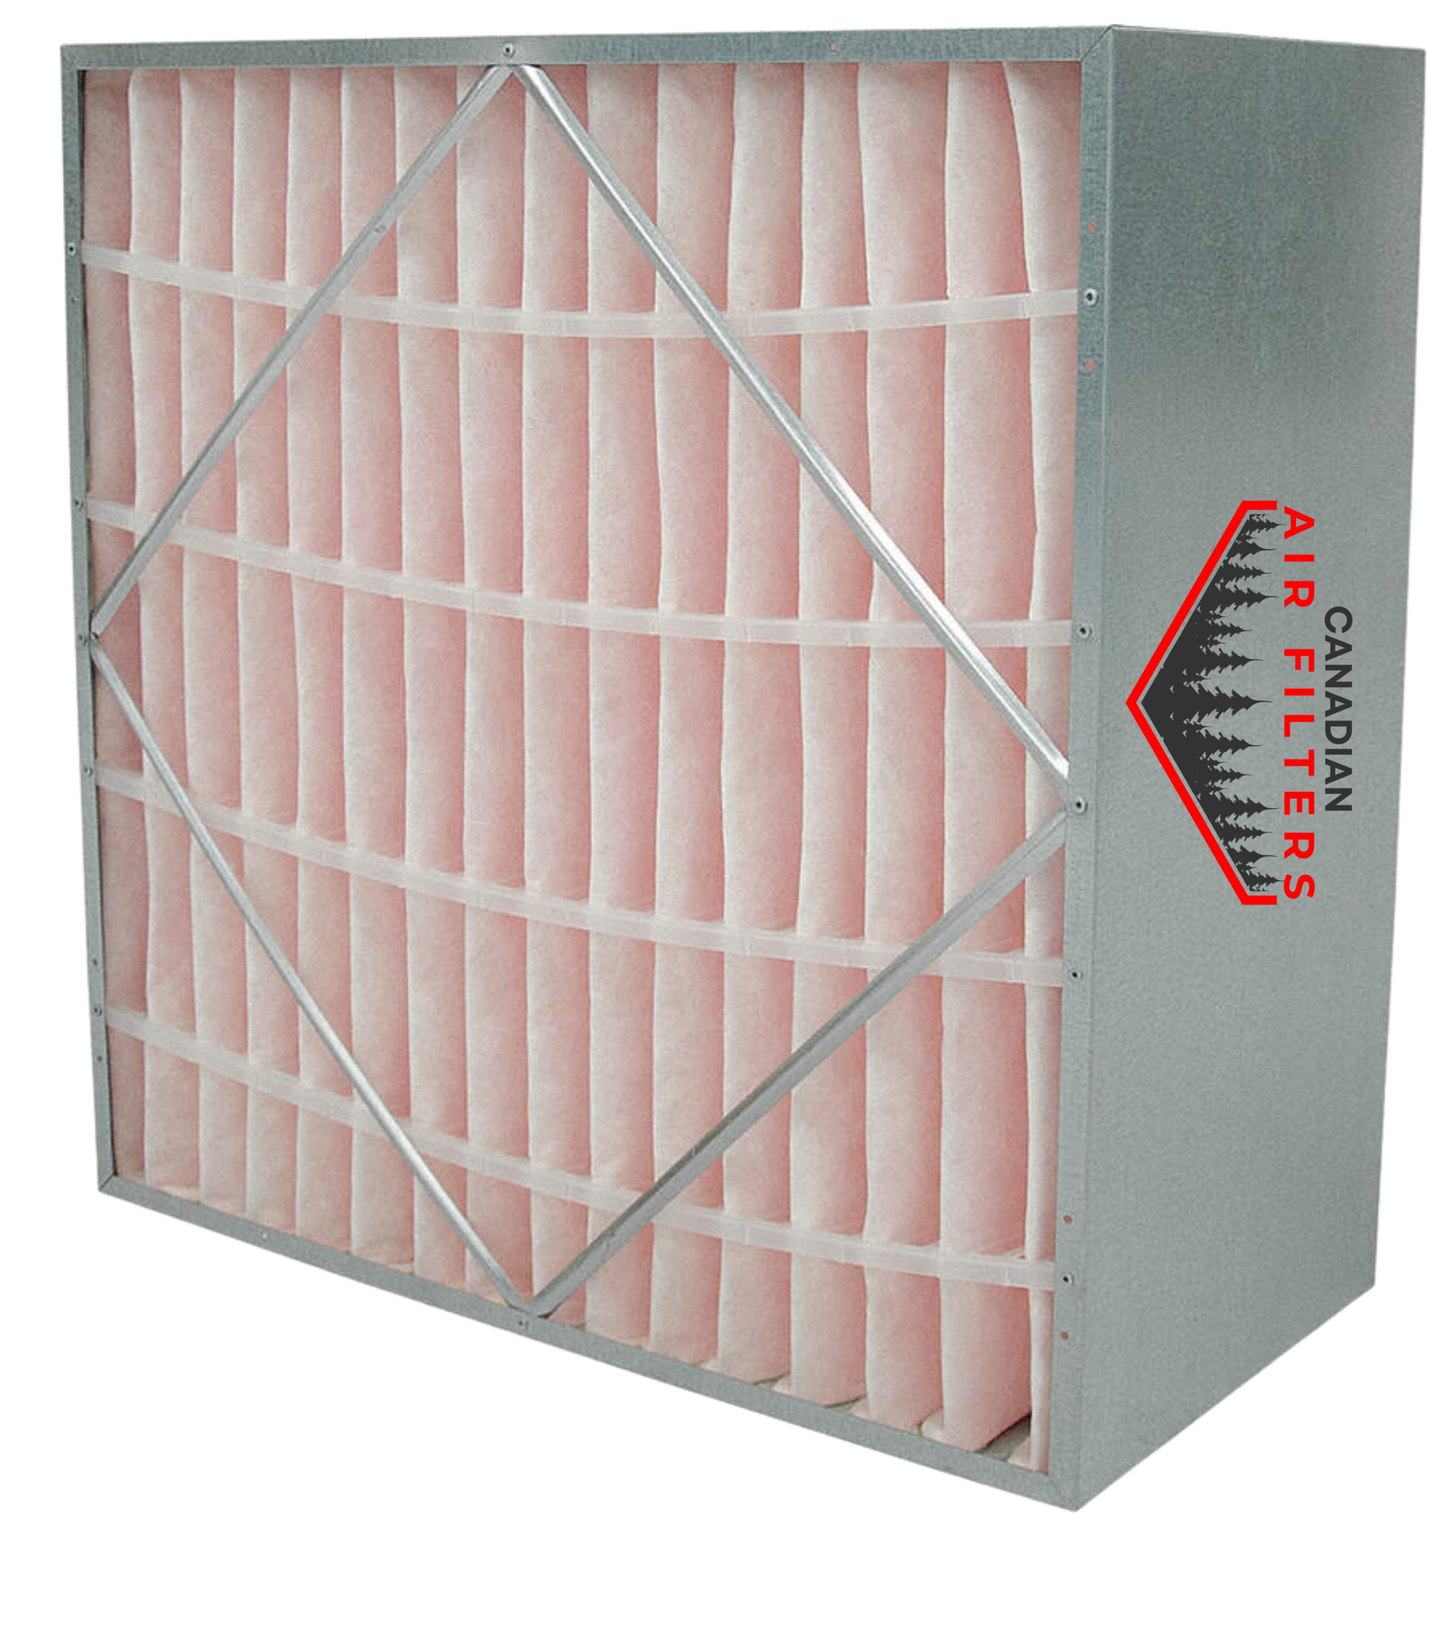 20 x 24 x 12 - Rigid Cell Air Filters Box Style - Merv 13 (Each)